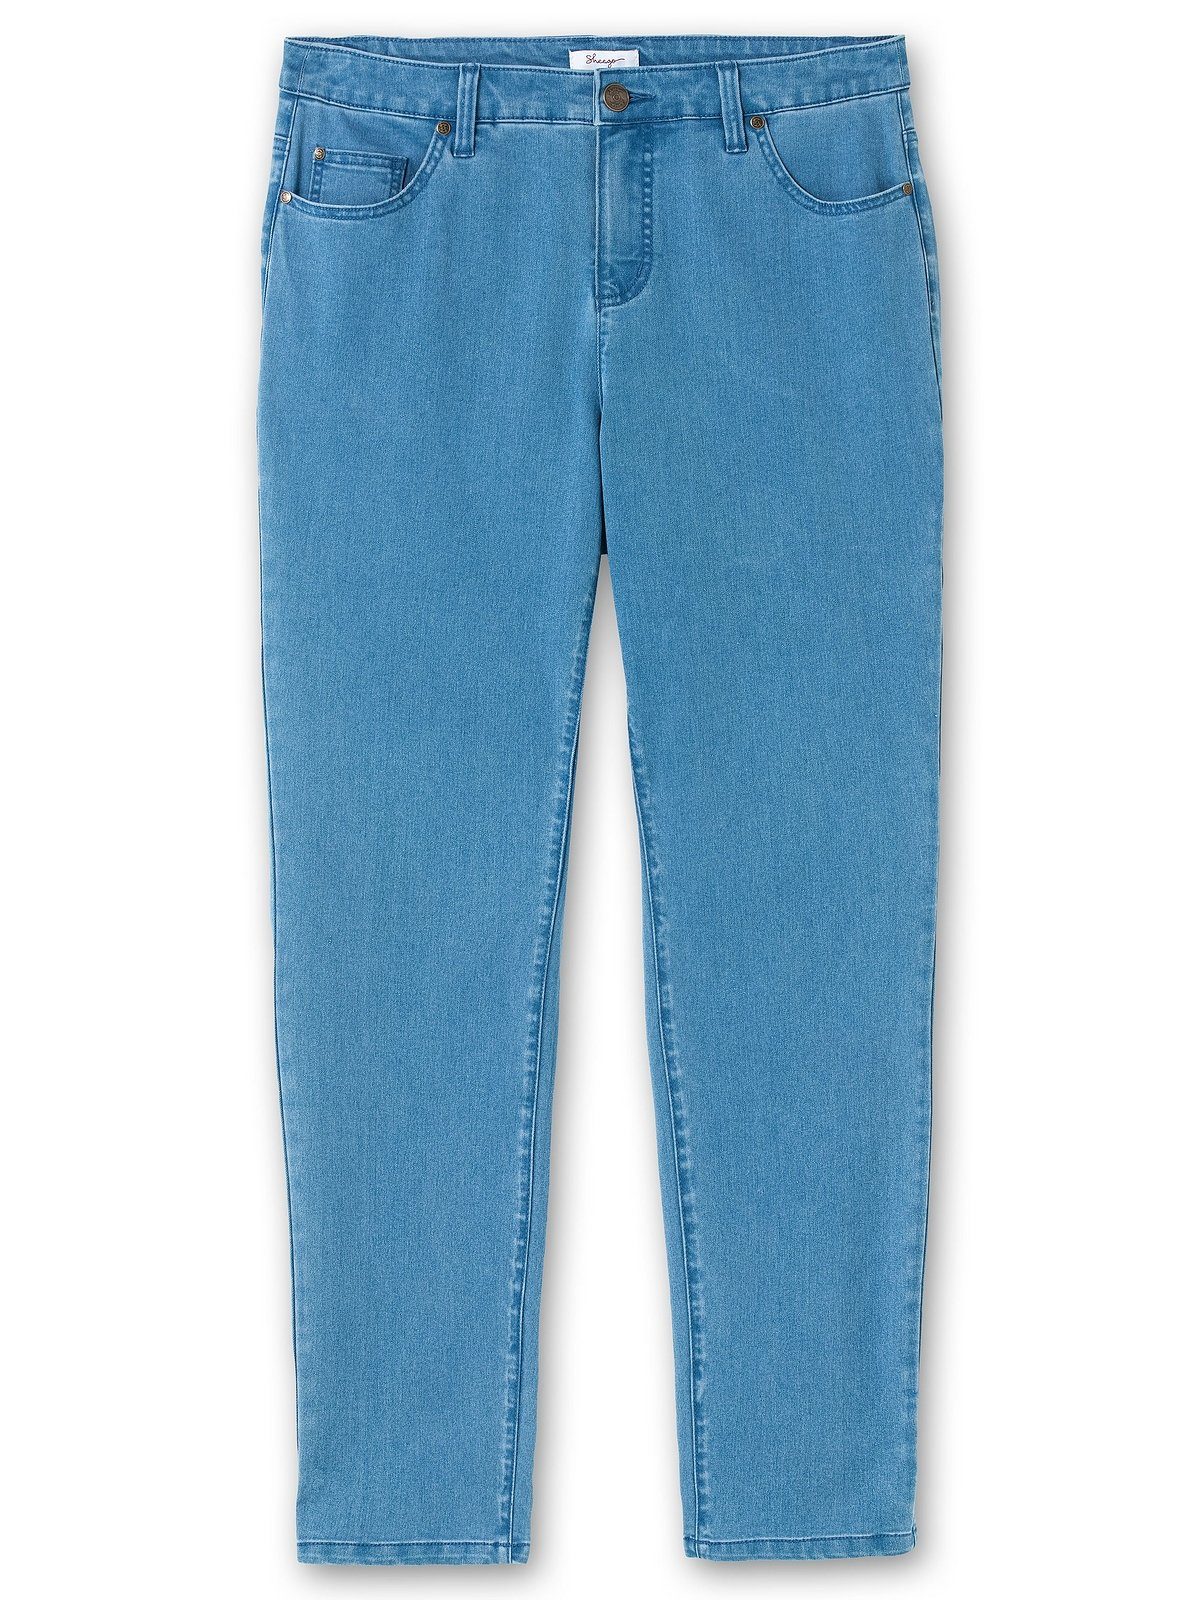 Große Stretch-Jeans Sheego Größen 5-Pocket-Stil Denim im blue